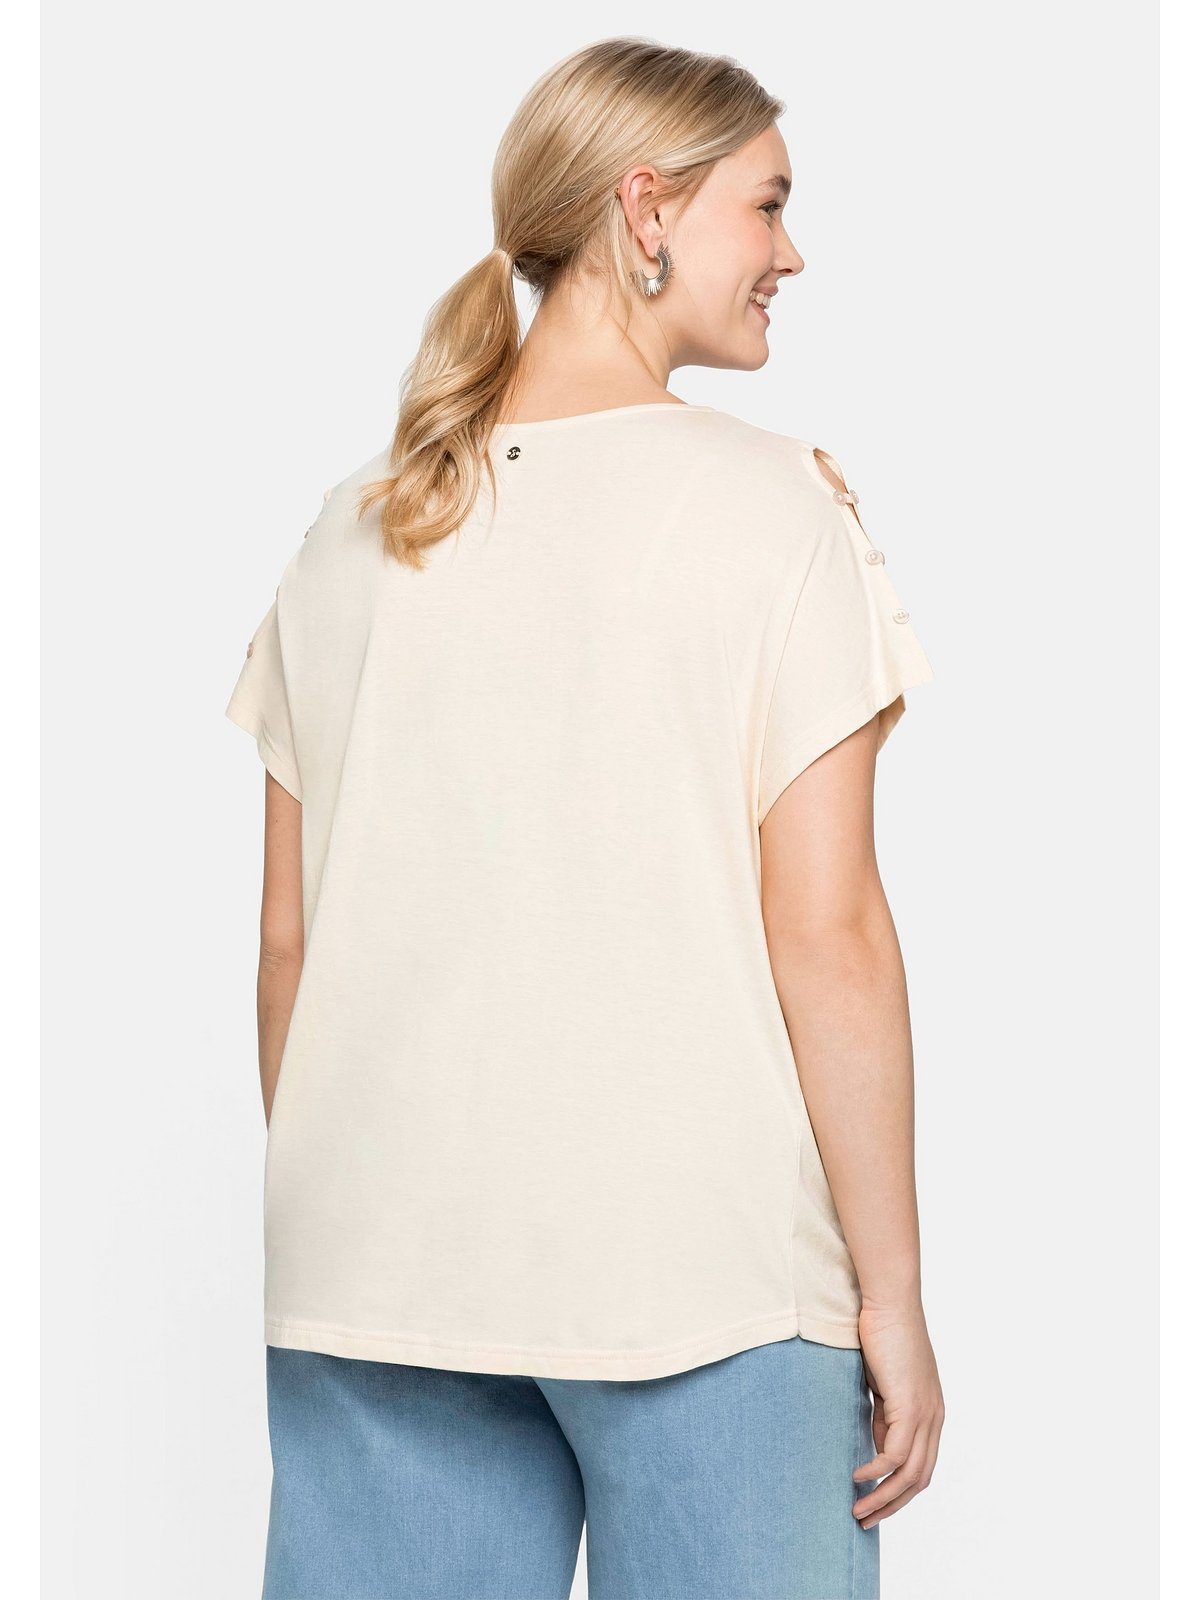 A-Linie mit T-Shirt in Sheego natur Große Schulterpartie, leichter offener Größen